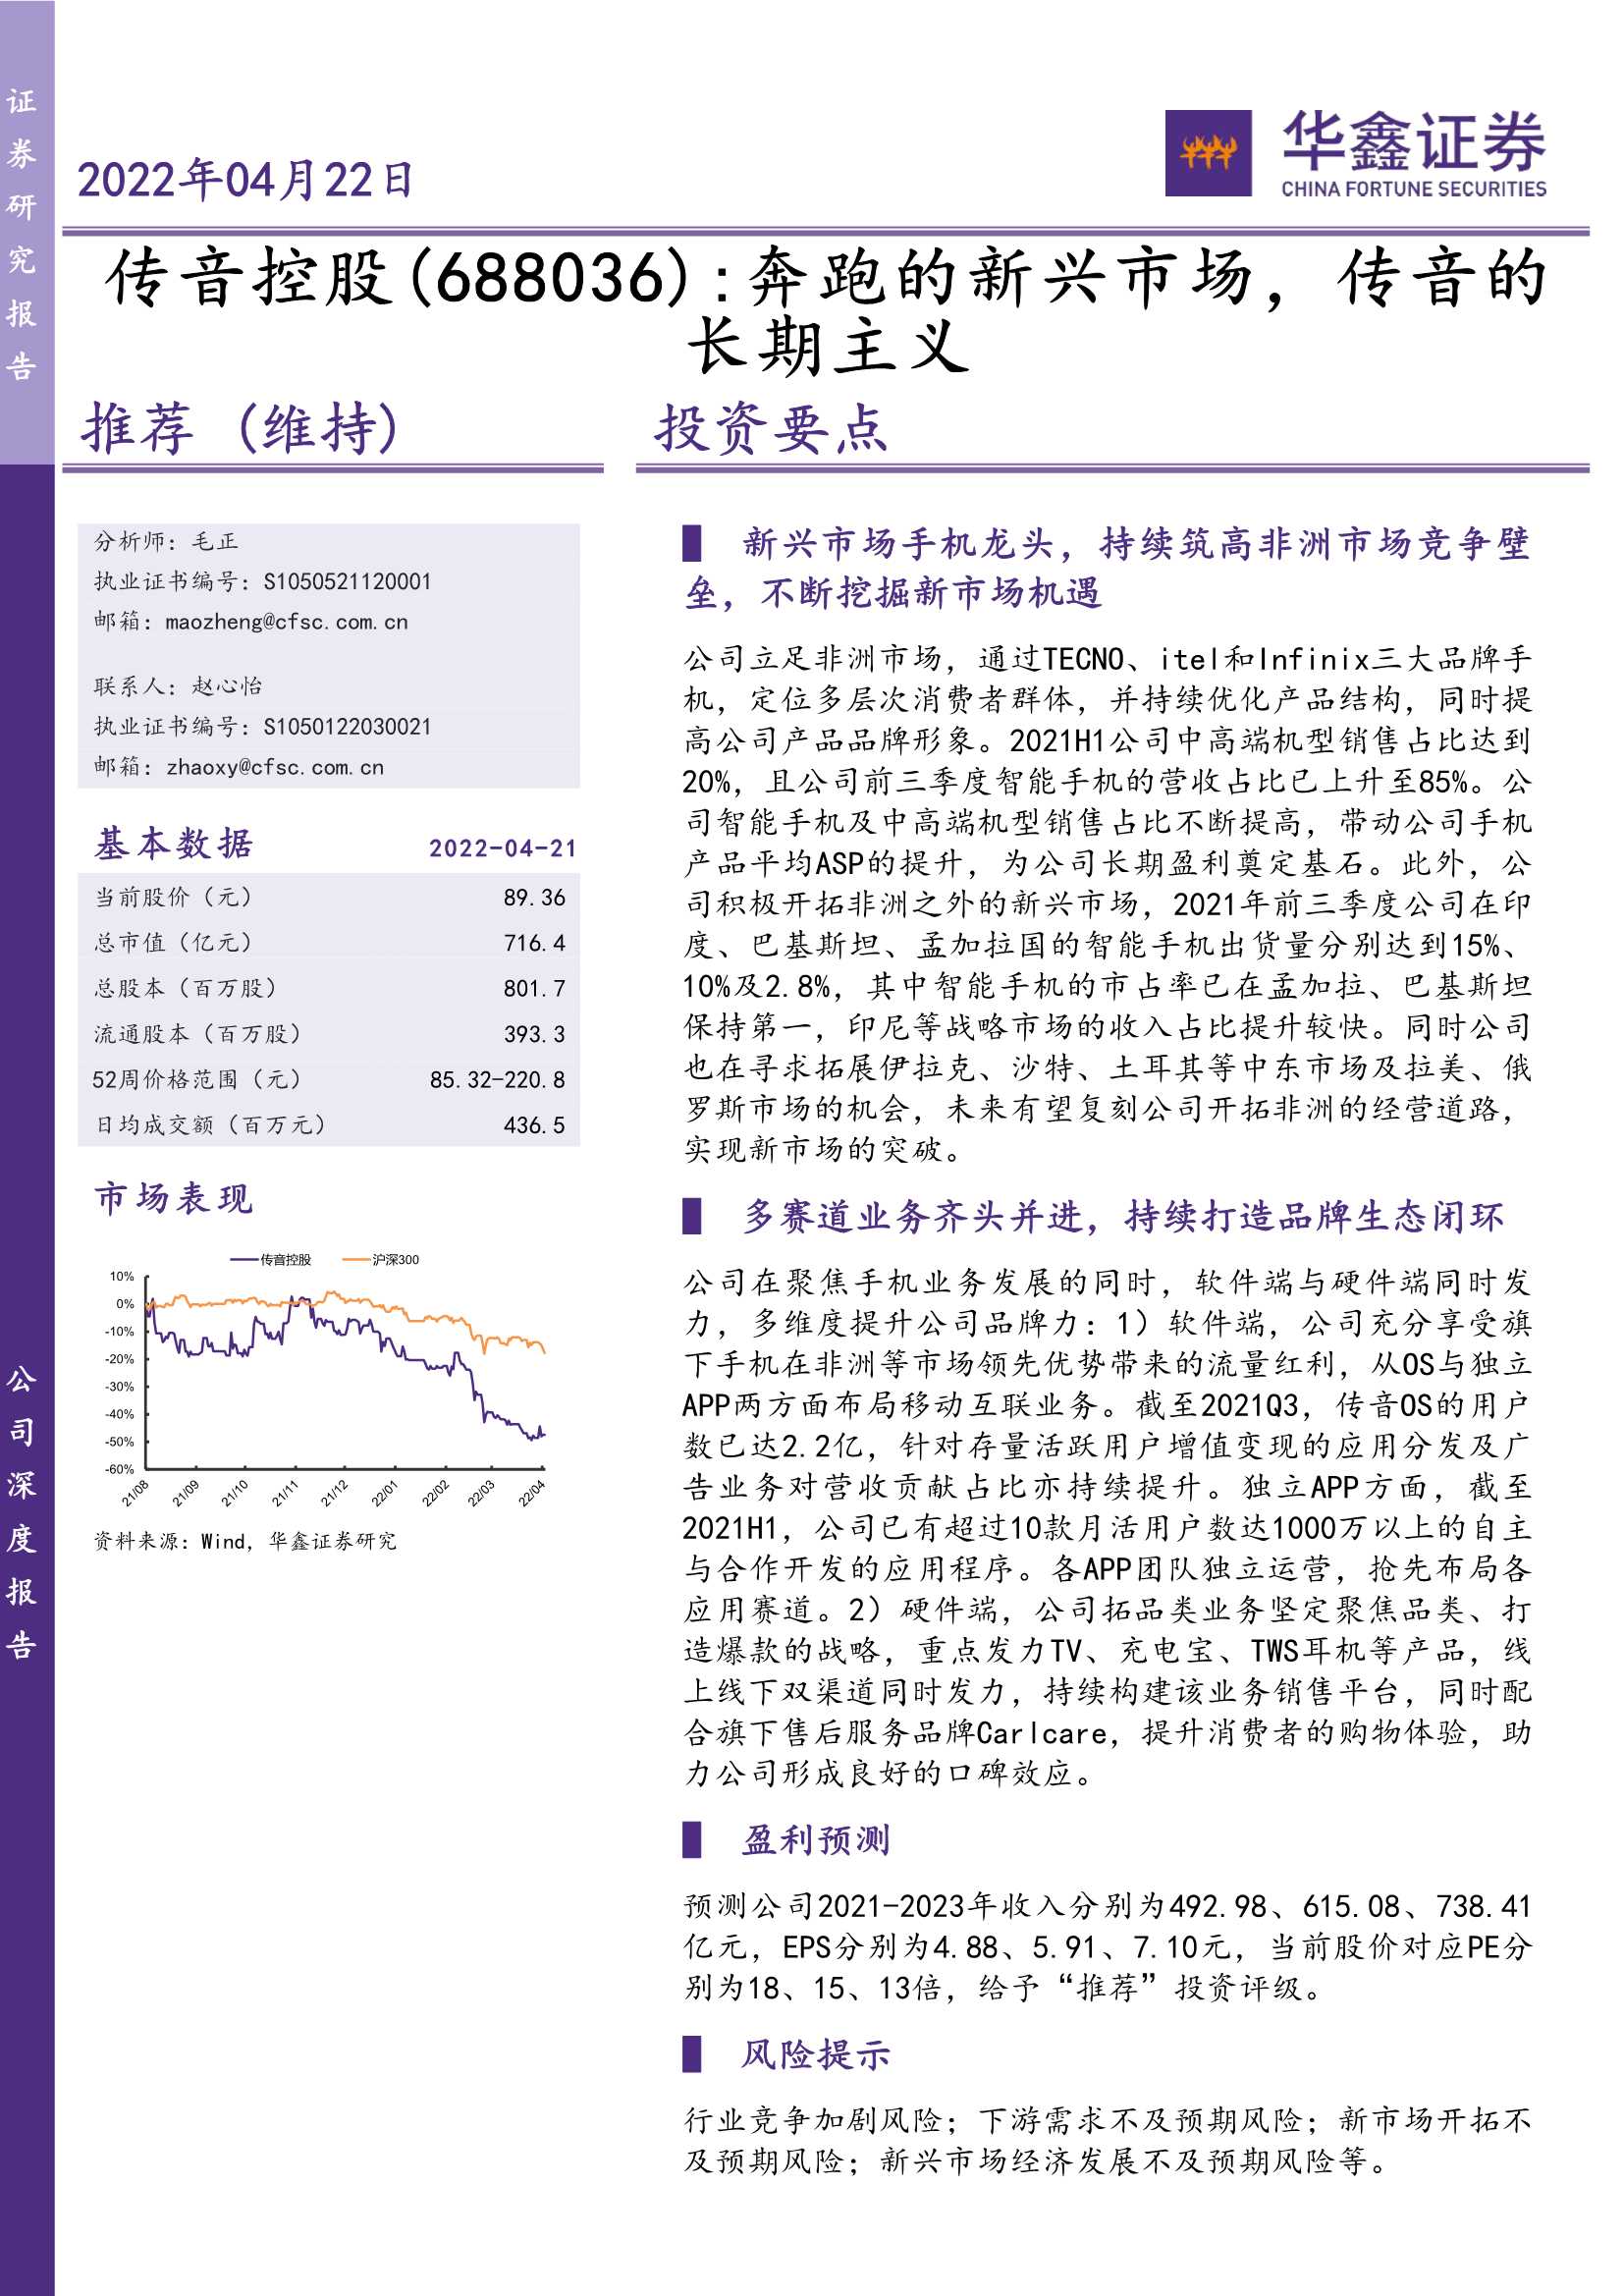 传音控股-688036-奔跑的新兴市场，传音的长期主义-20220422-华鑫证券-35页